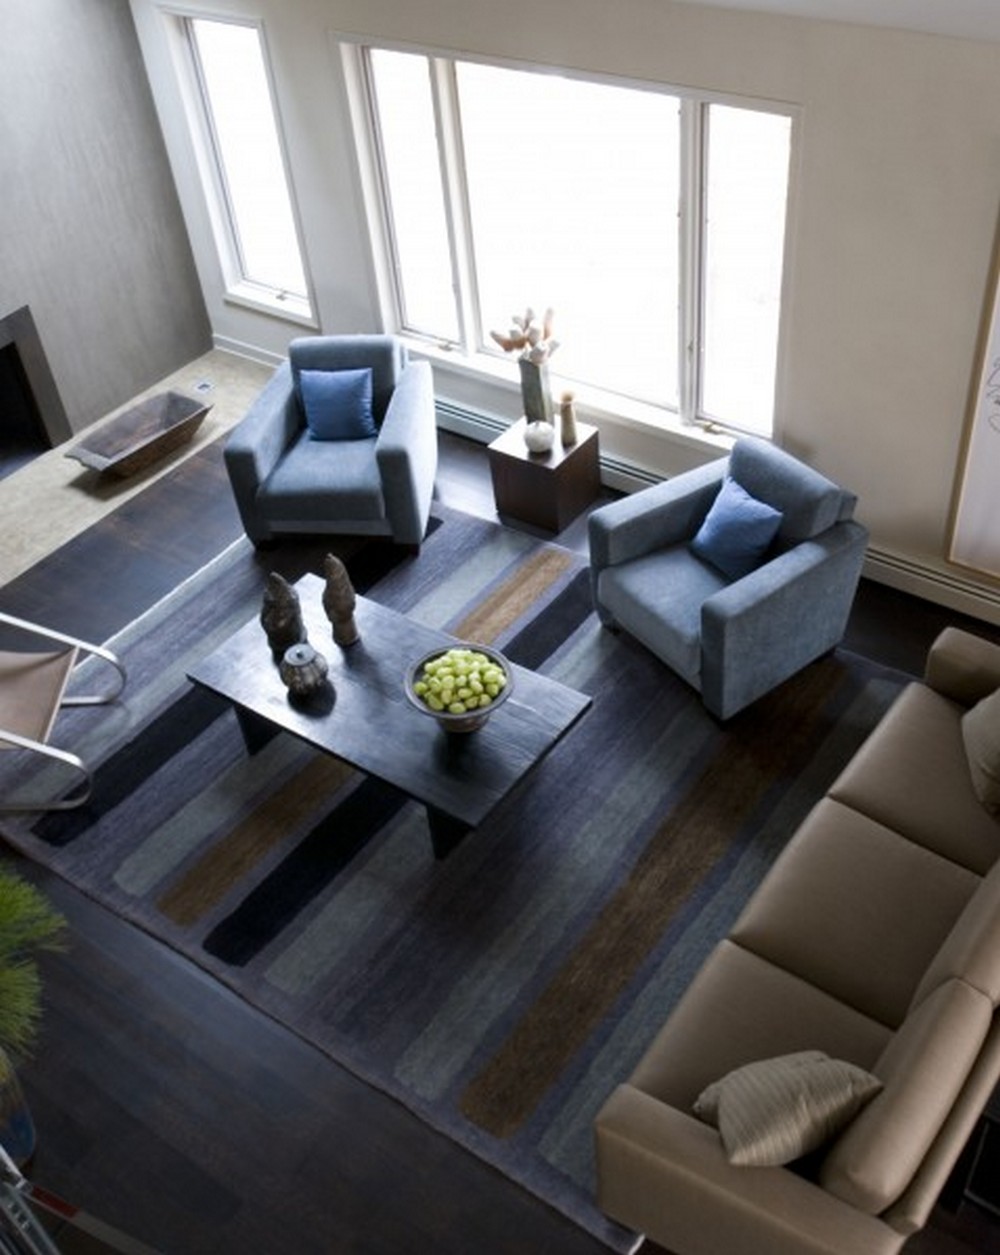 Clodagh's Contemporary Living Room Designs Are Super Inspirational